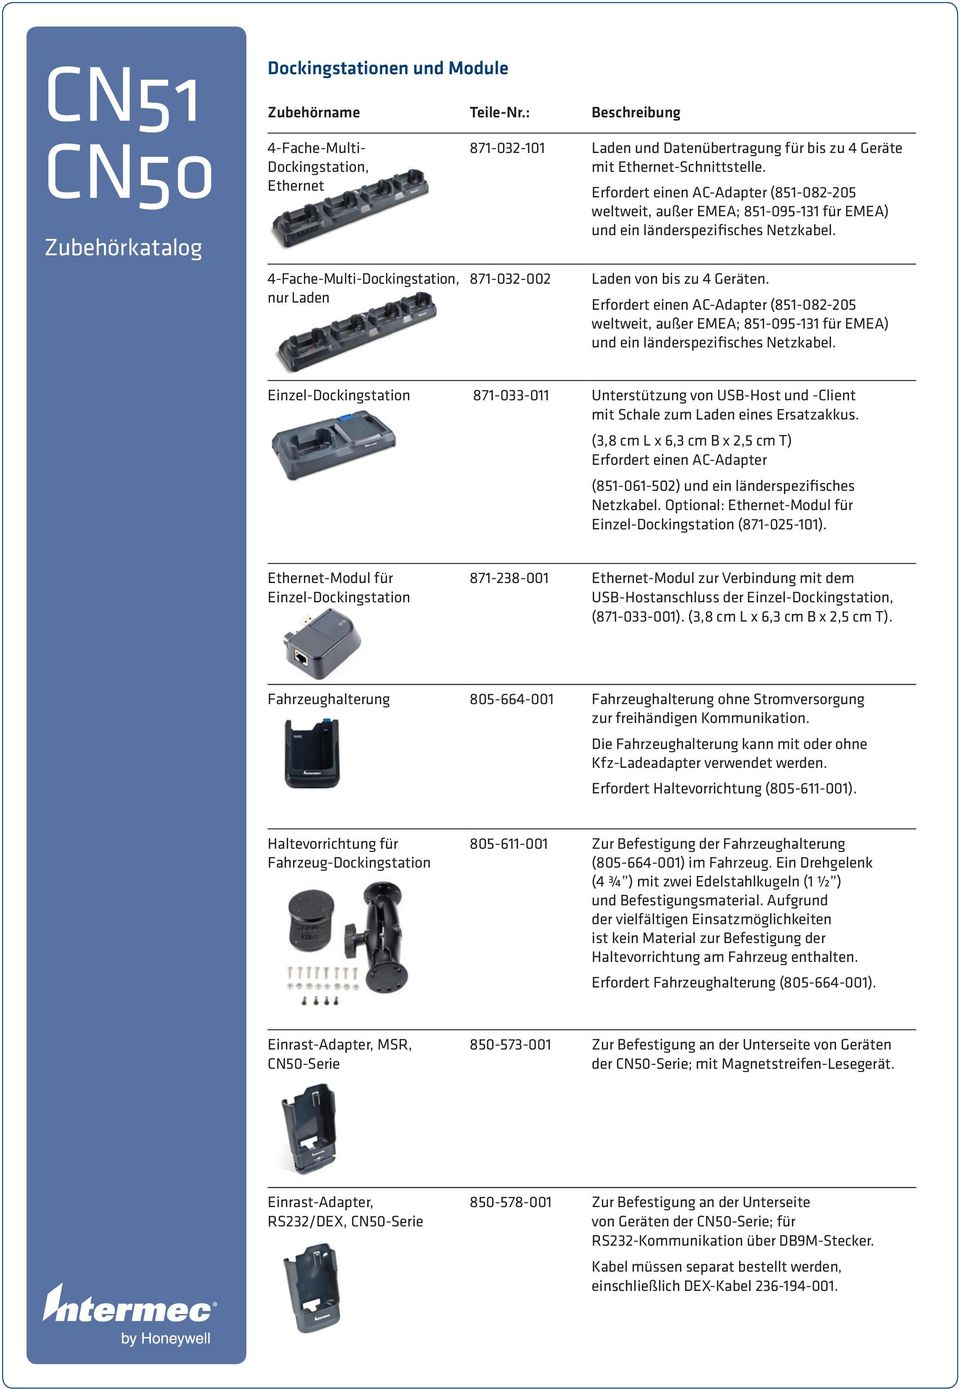 Erfordert einen AC-Adapter (851-082-205 weltweit, außer EMEA; 851-095-131 für EMEA) und ein länderspezifisches Netzkabel.